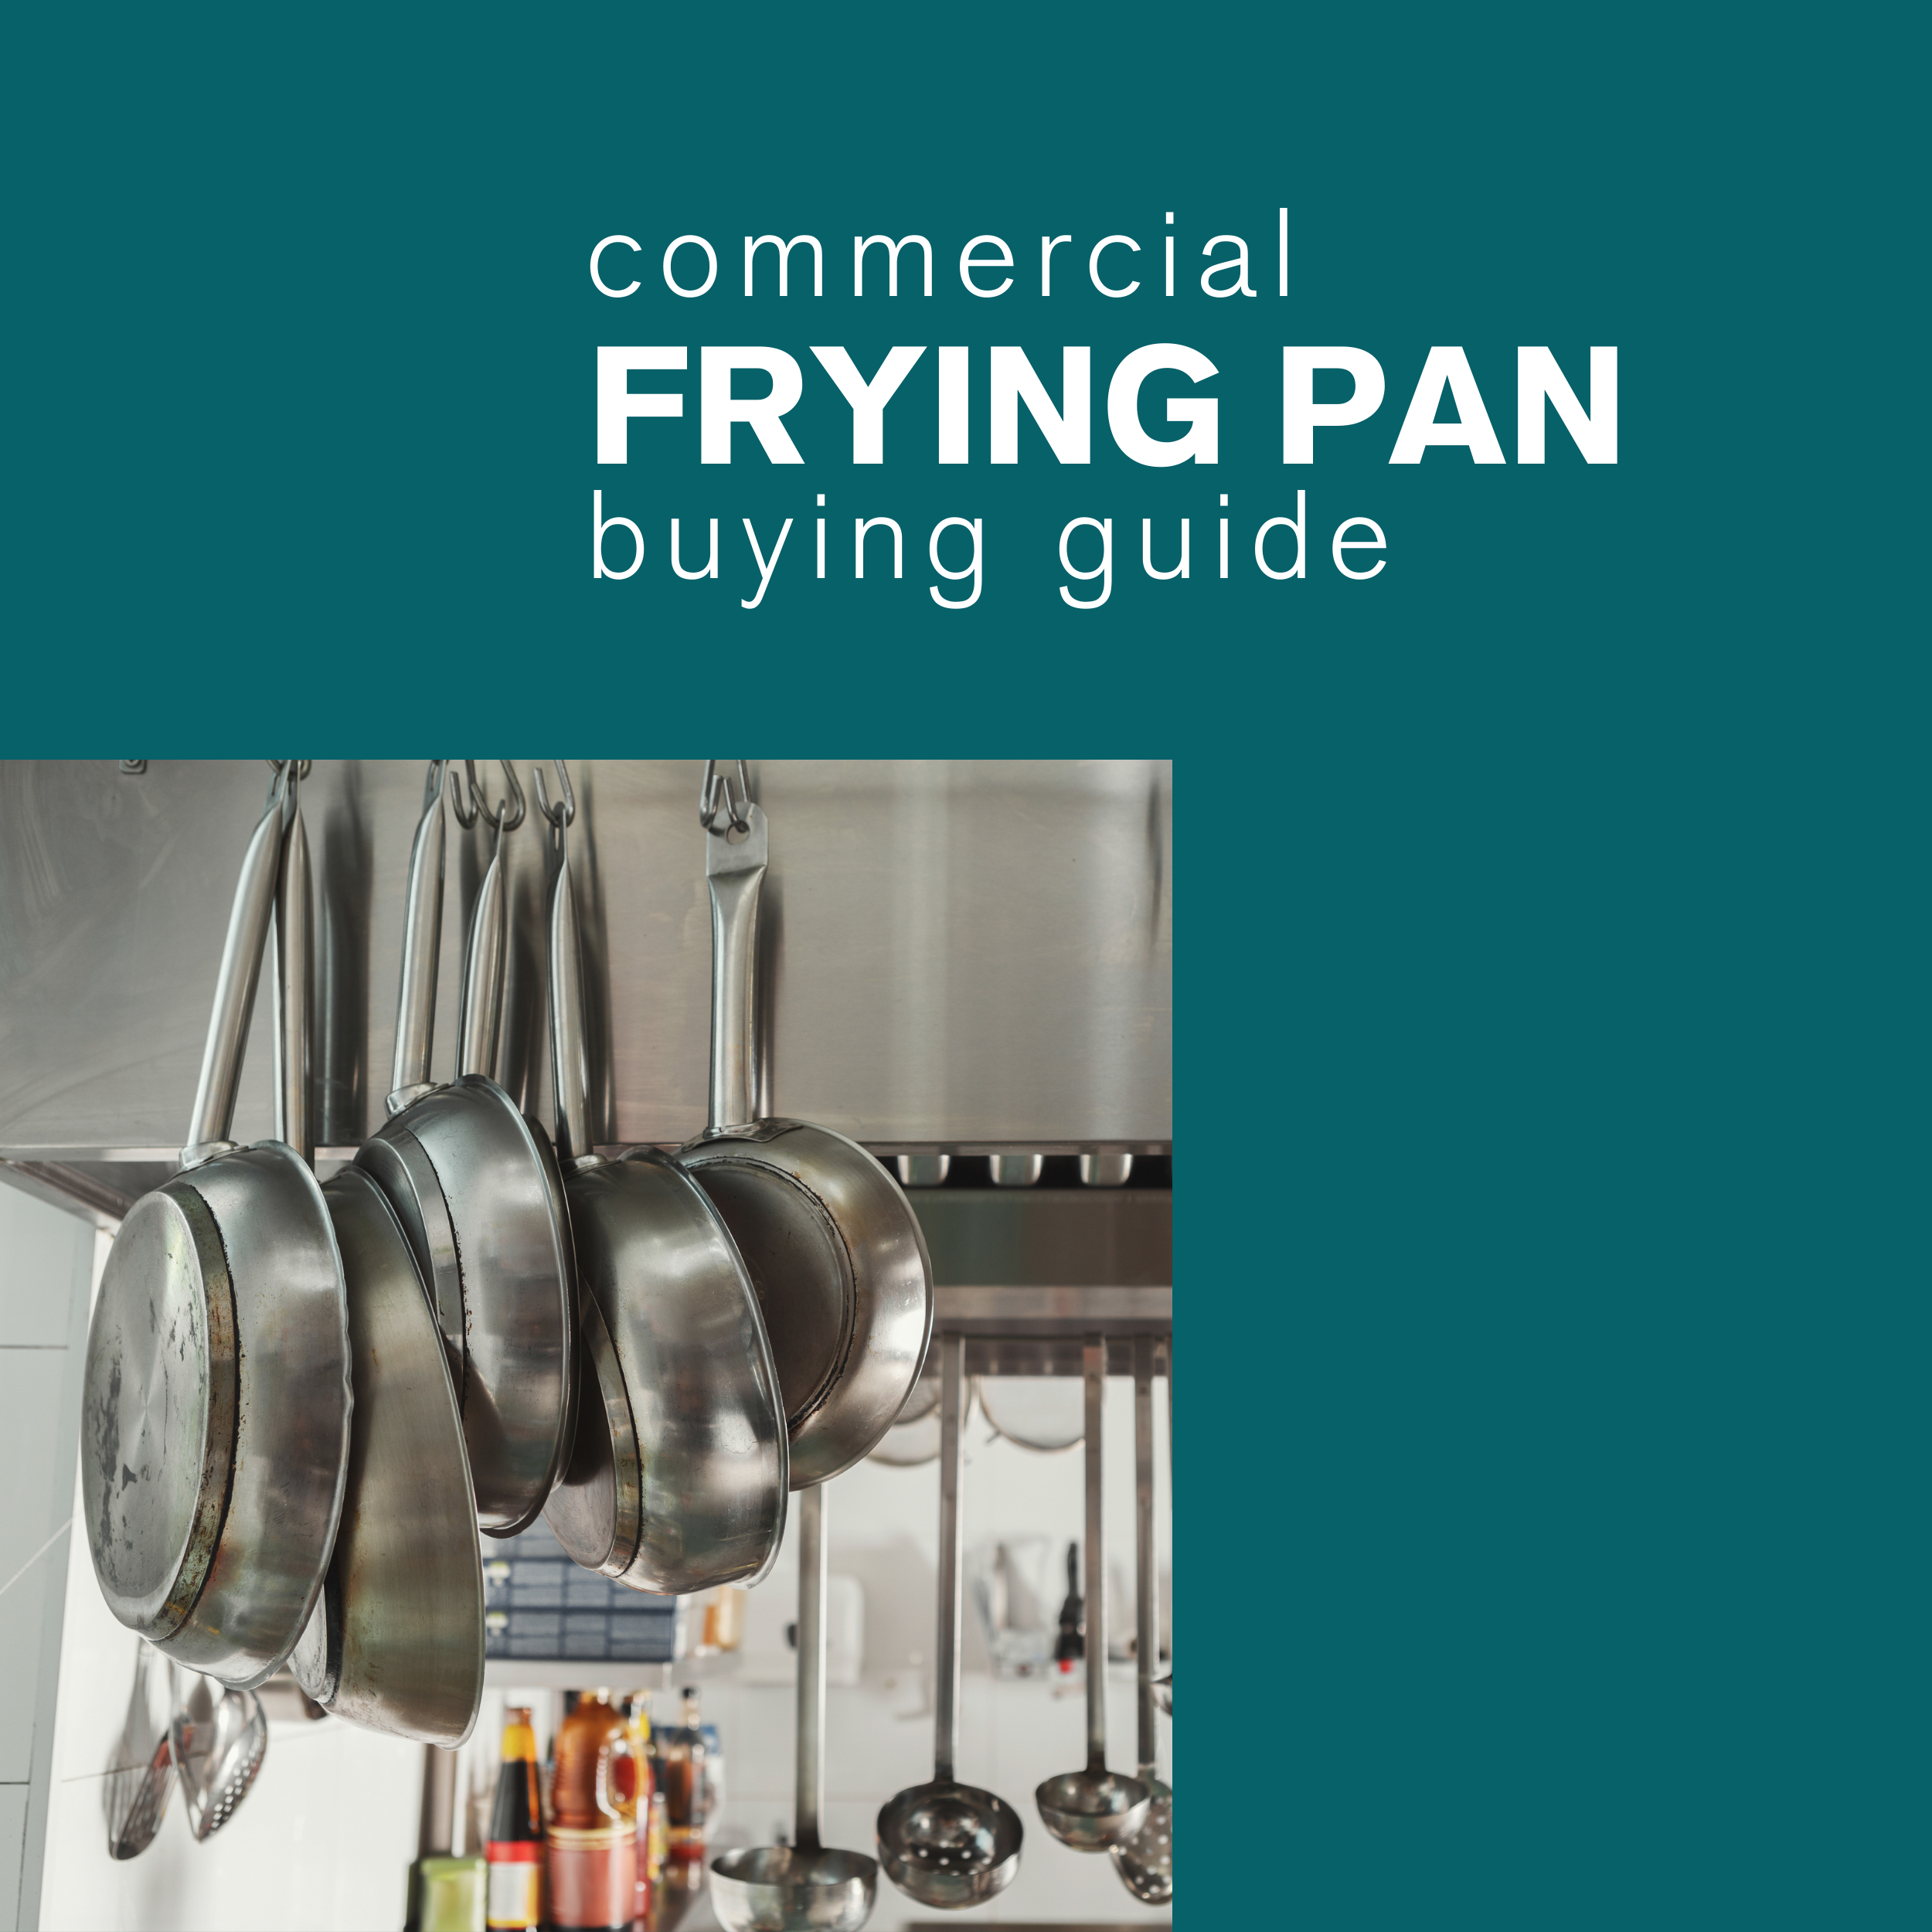 Metal Cookware Buyer's Guide